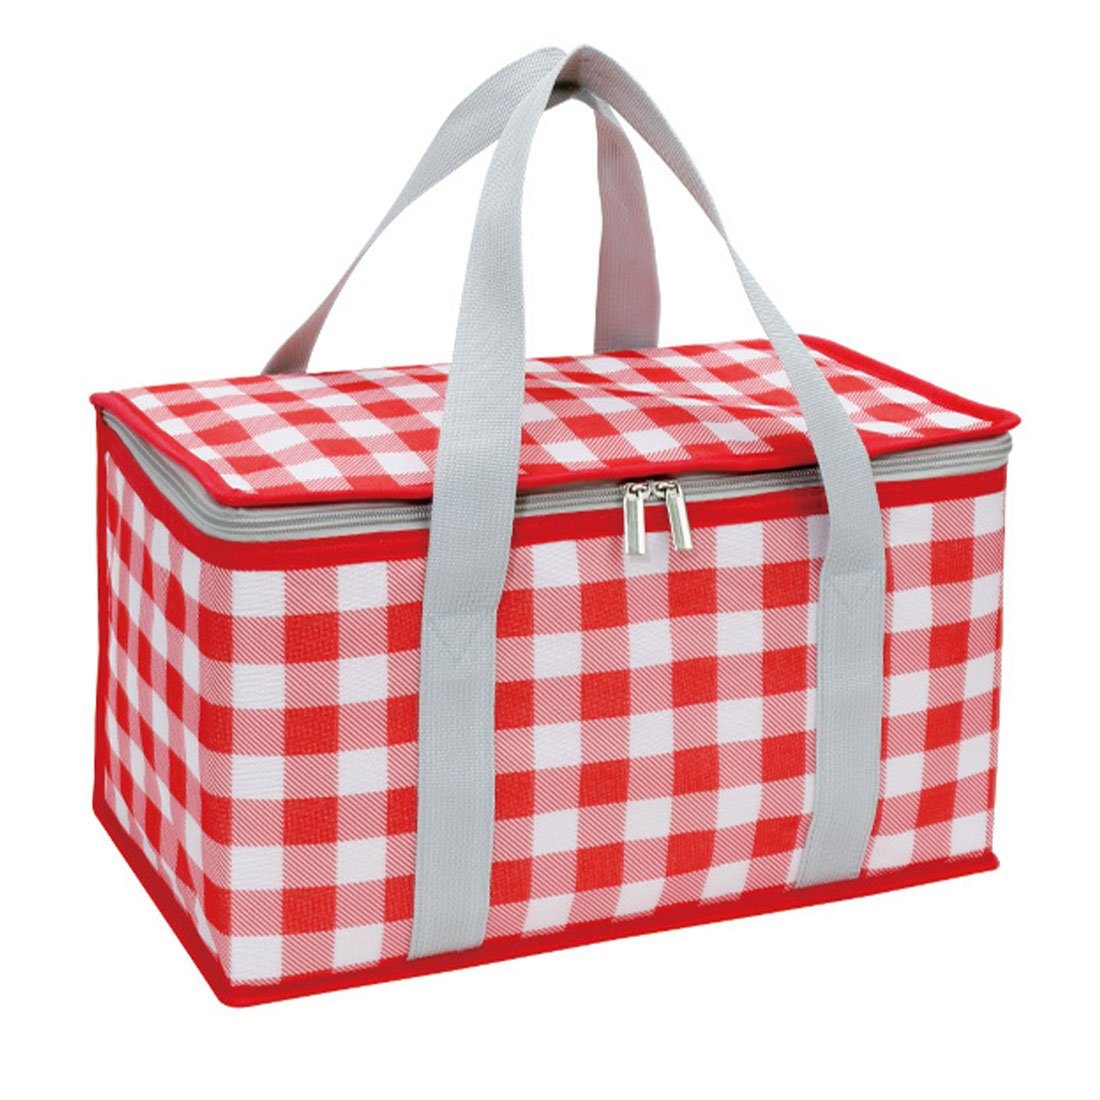 DÖRÖY Thermobehälter Camping-Isoliertaschen, Lunch-Taschen Outdoor-Picknicktaschen, Rot